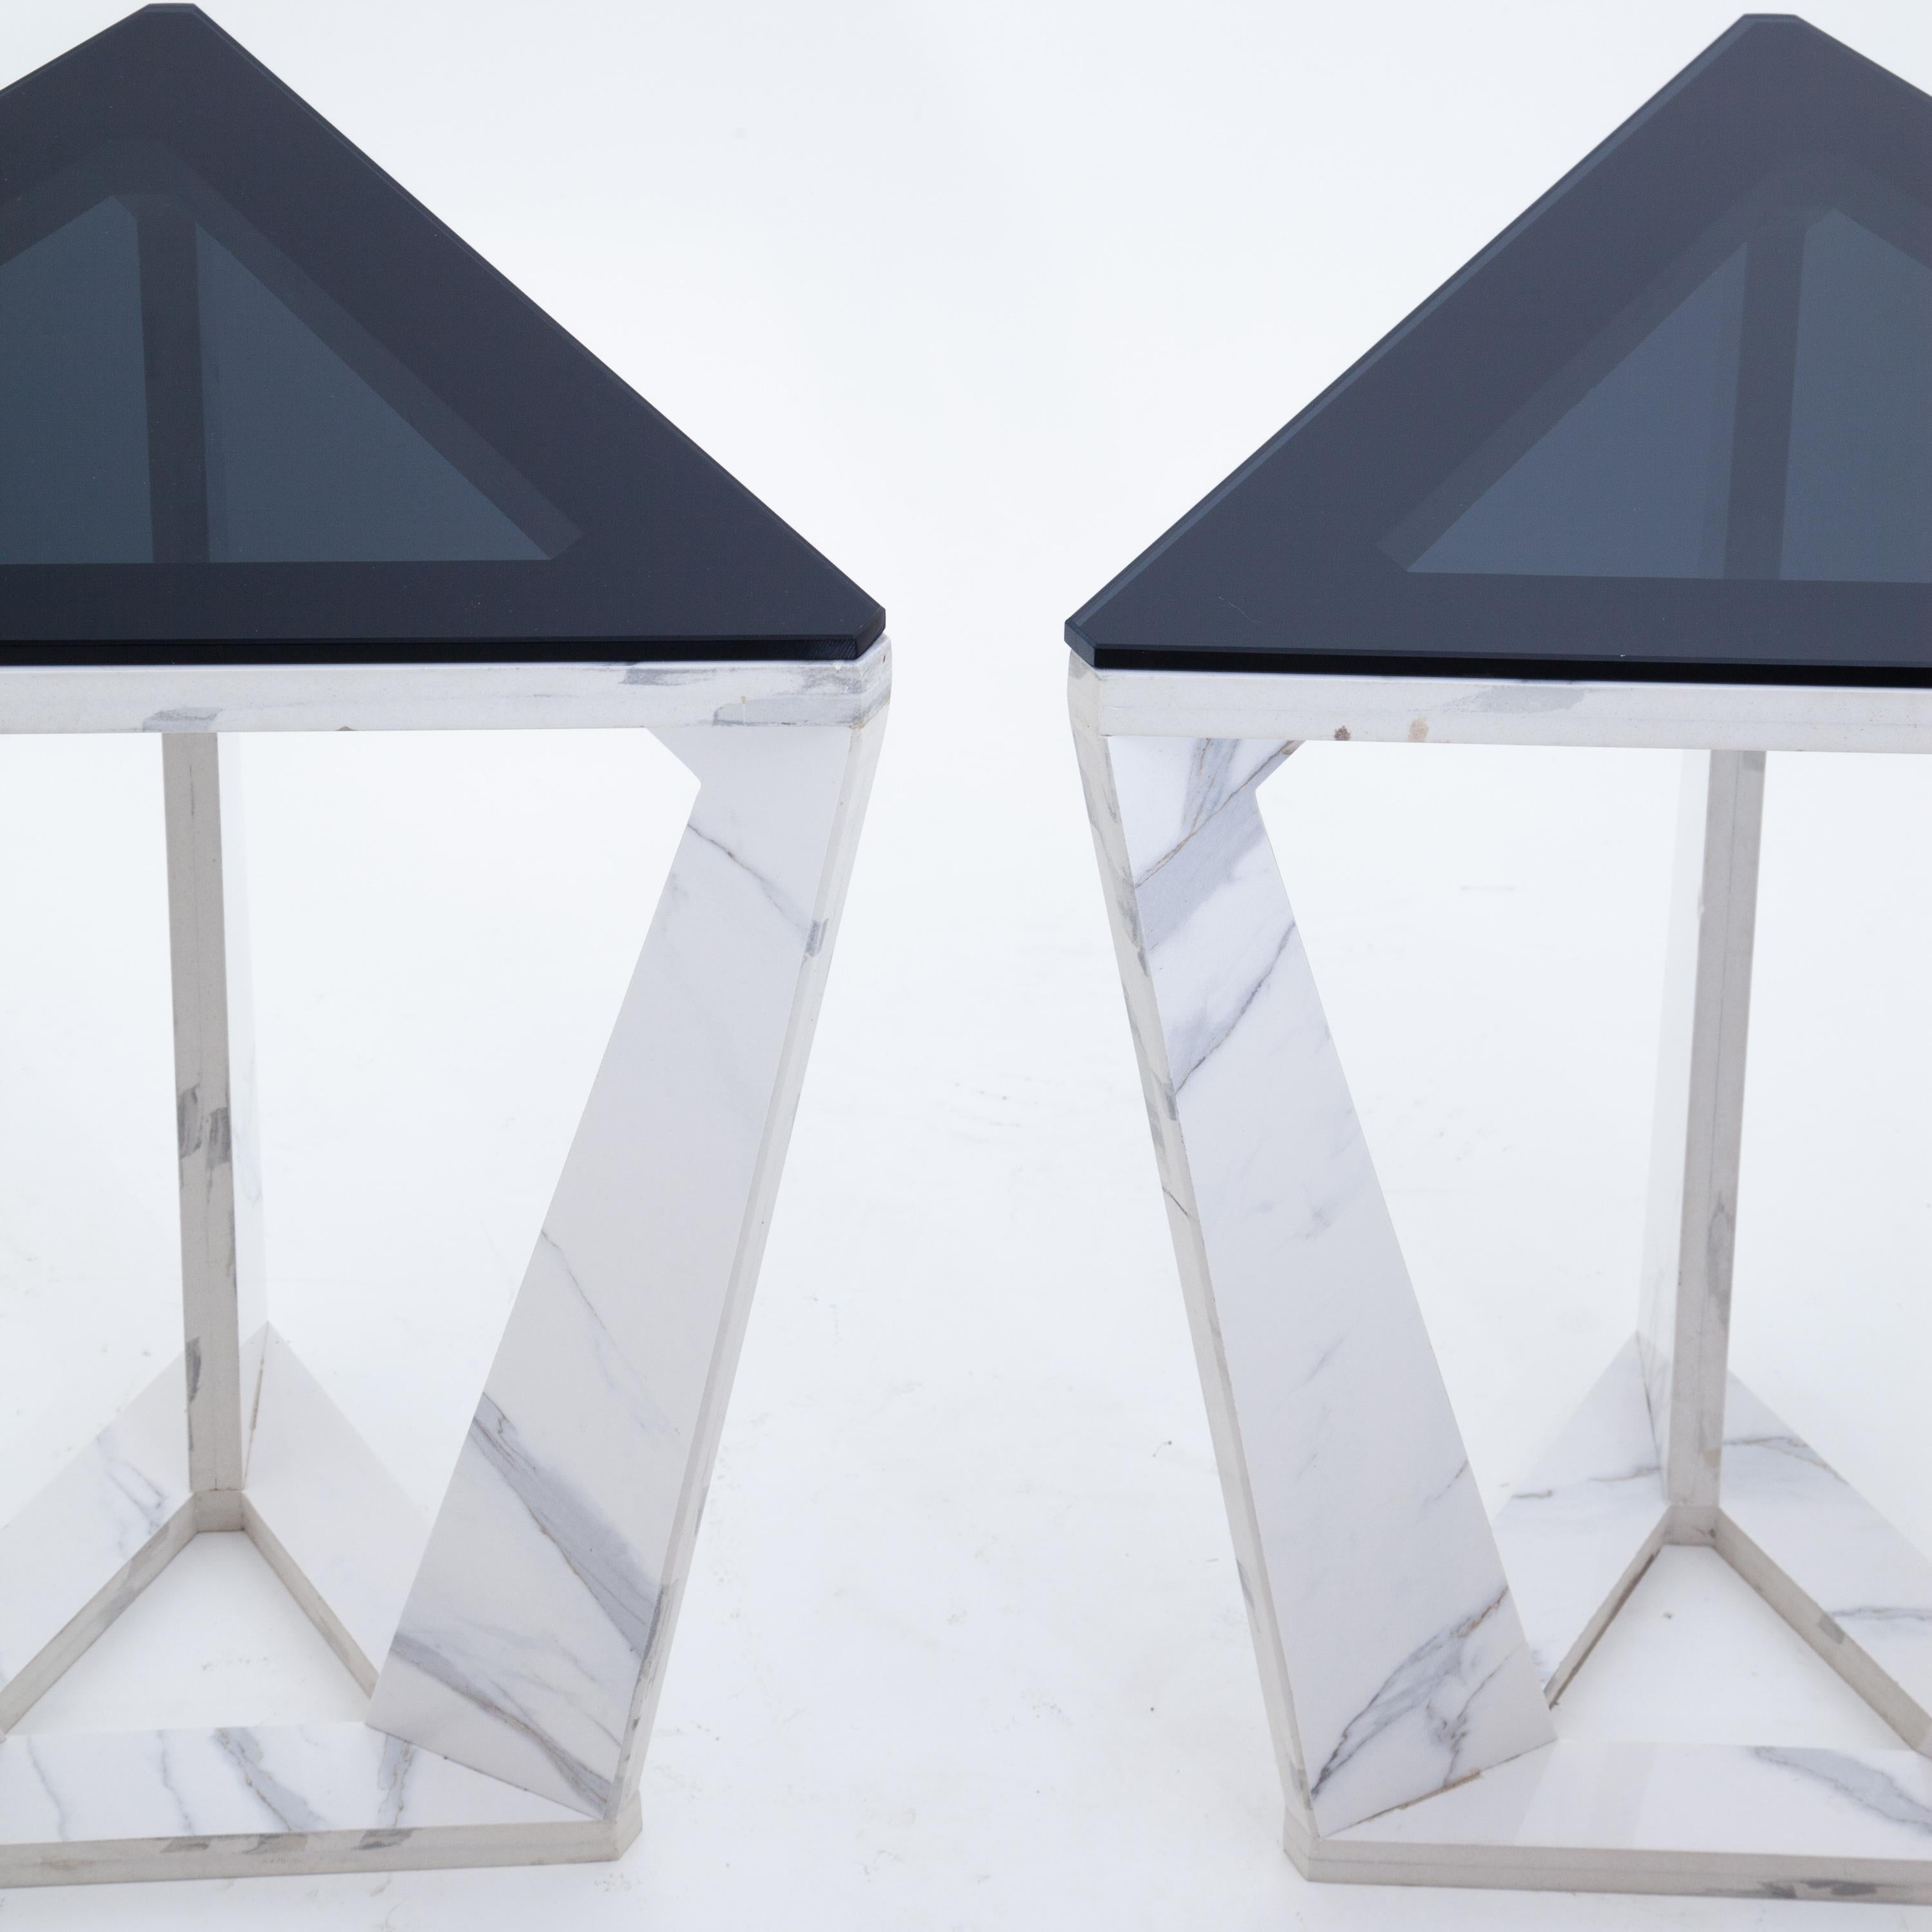 Ein Paar italienische moderne dreieckige Beistelltische. 
Marmorsockel mit schwarzen Glasplatten.